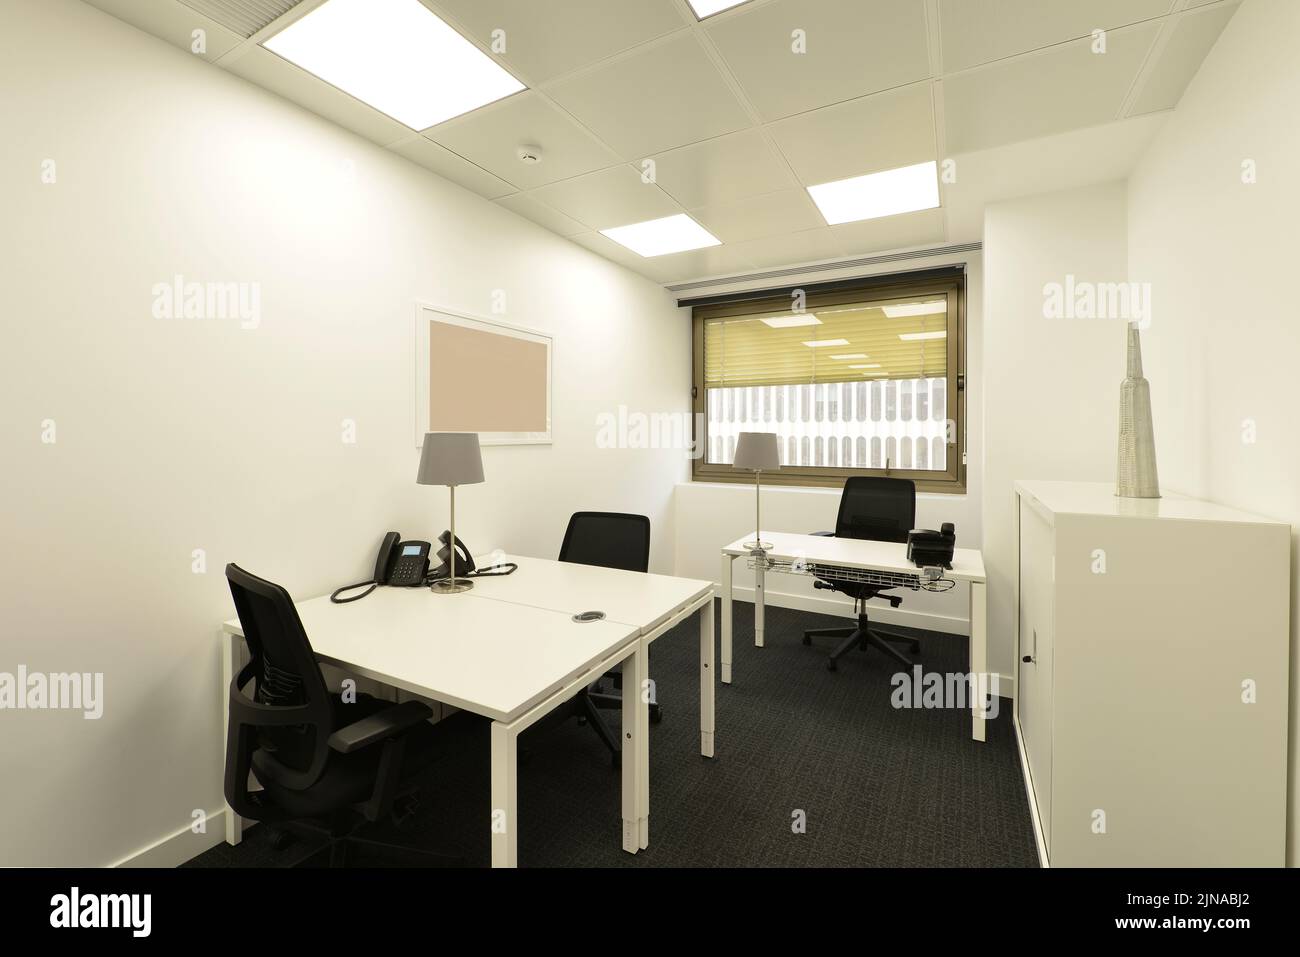 Cabina in ufficio professionale con tavolo condiviso, lima, sedie girevoli nere Foto Stock